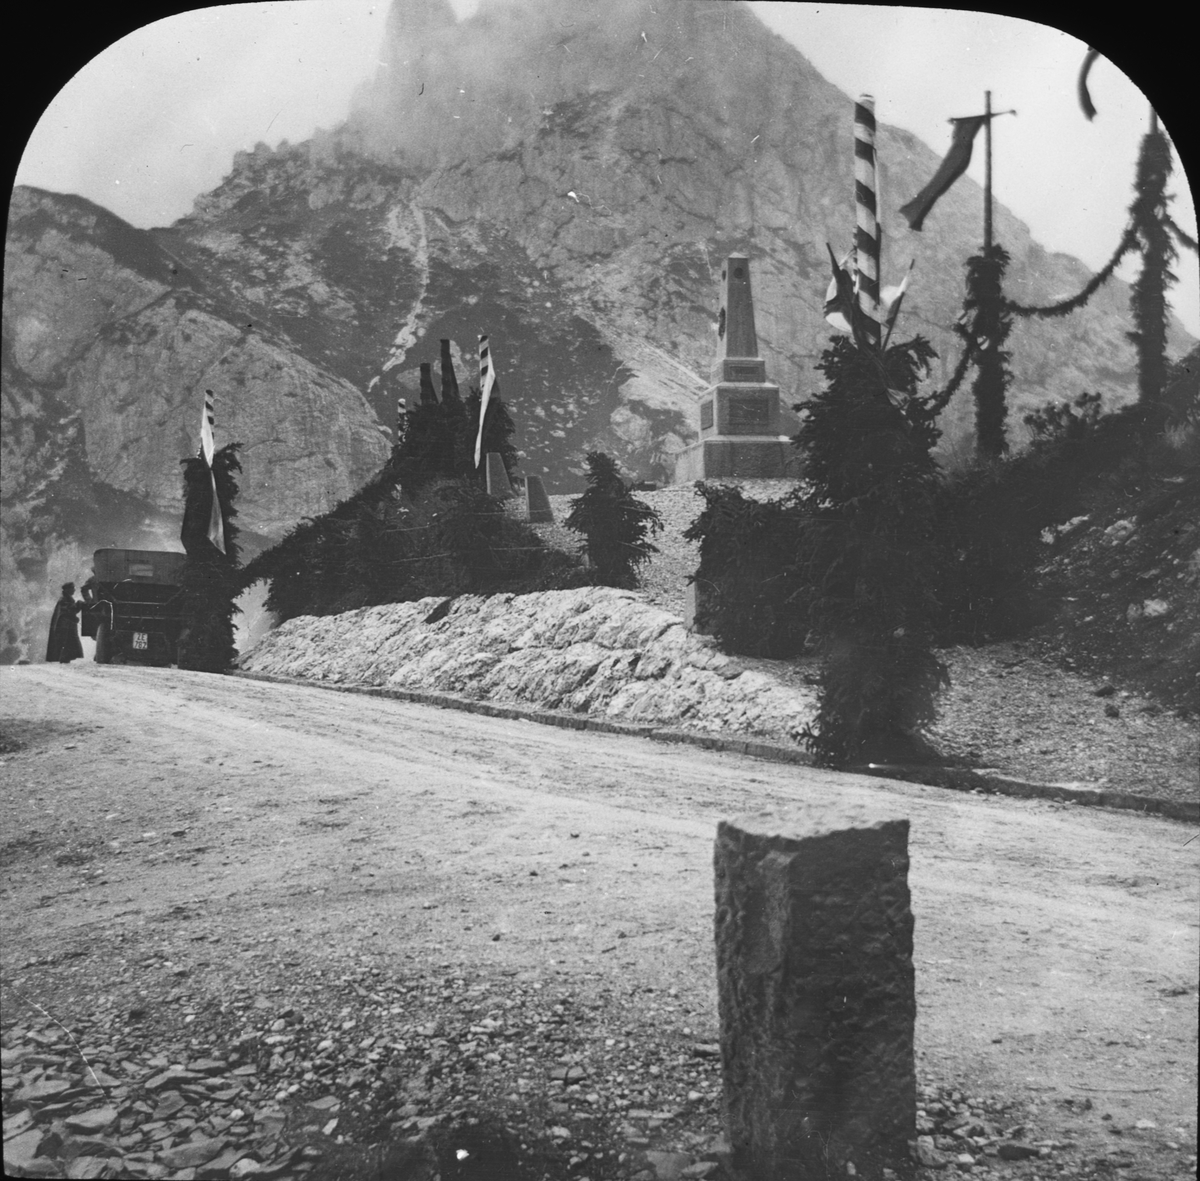 Skioptikonbild med motiv från bergspasset Falzarego, Italien.
Bilden har förvarats i kartong märkt: Höstresan 1909. Cortina 8. No.15. Text på bild: "Falzarego".